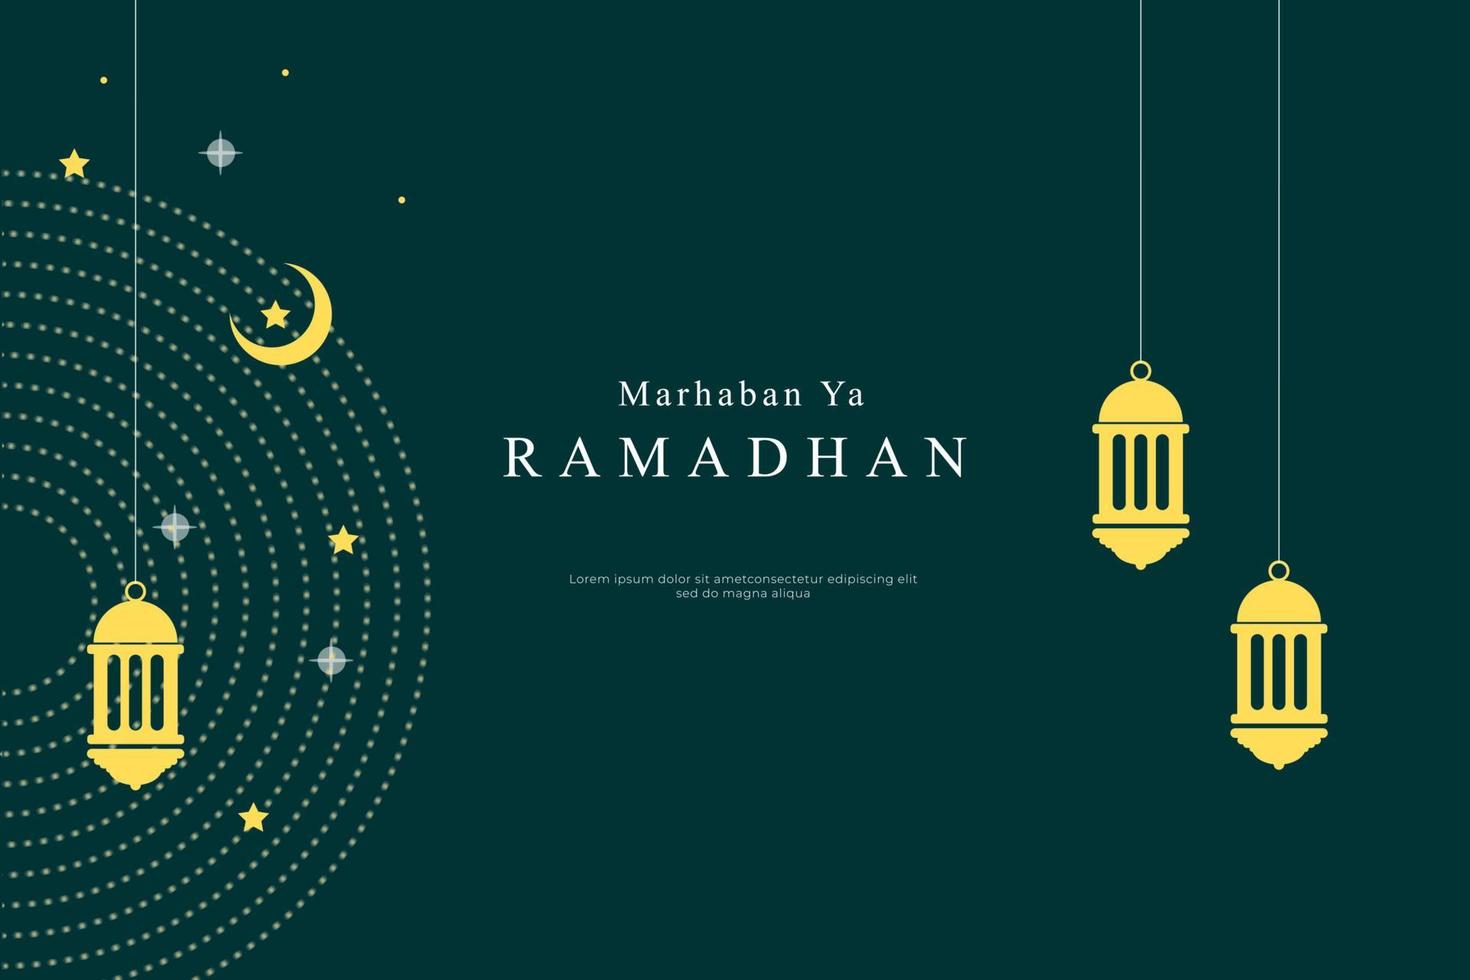 marhaban ya ramadhan gradient background vector